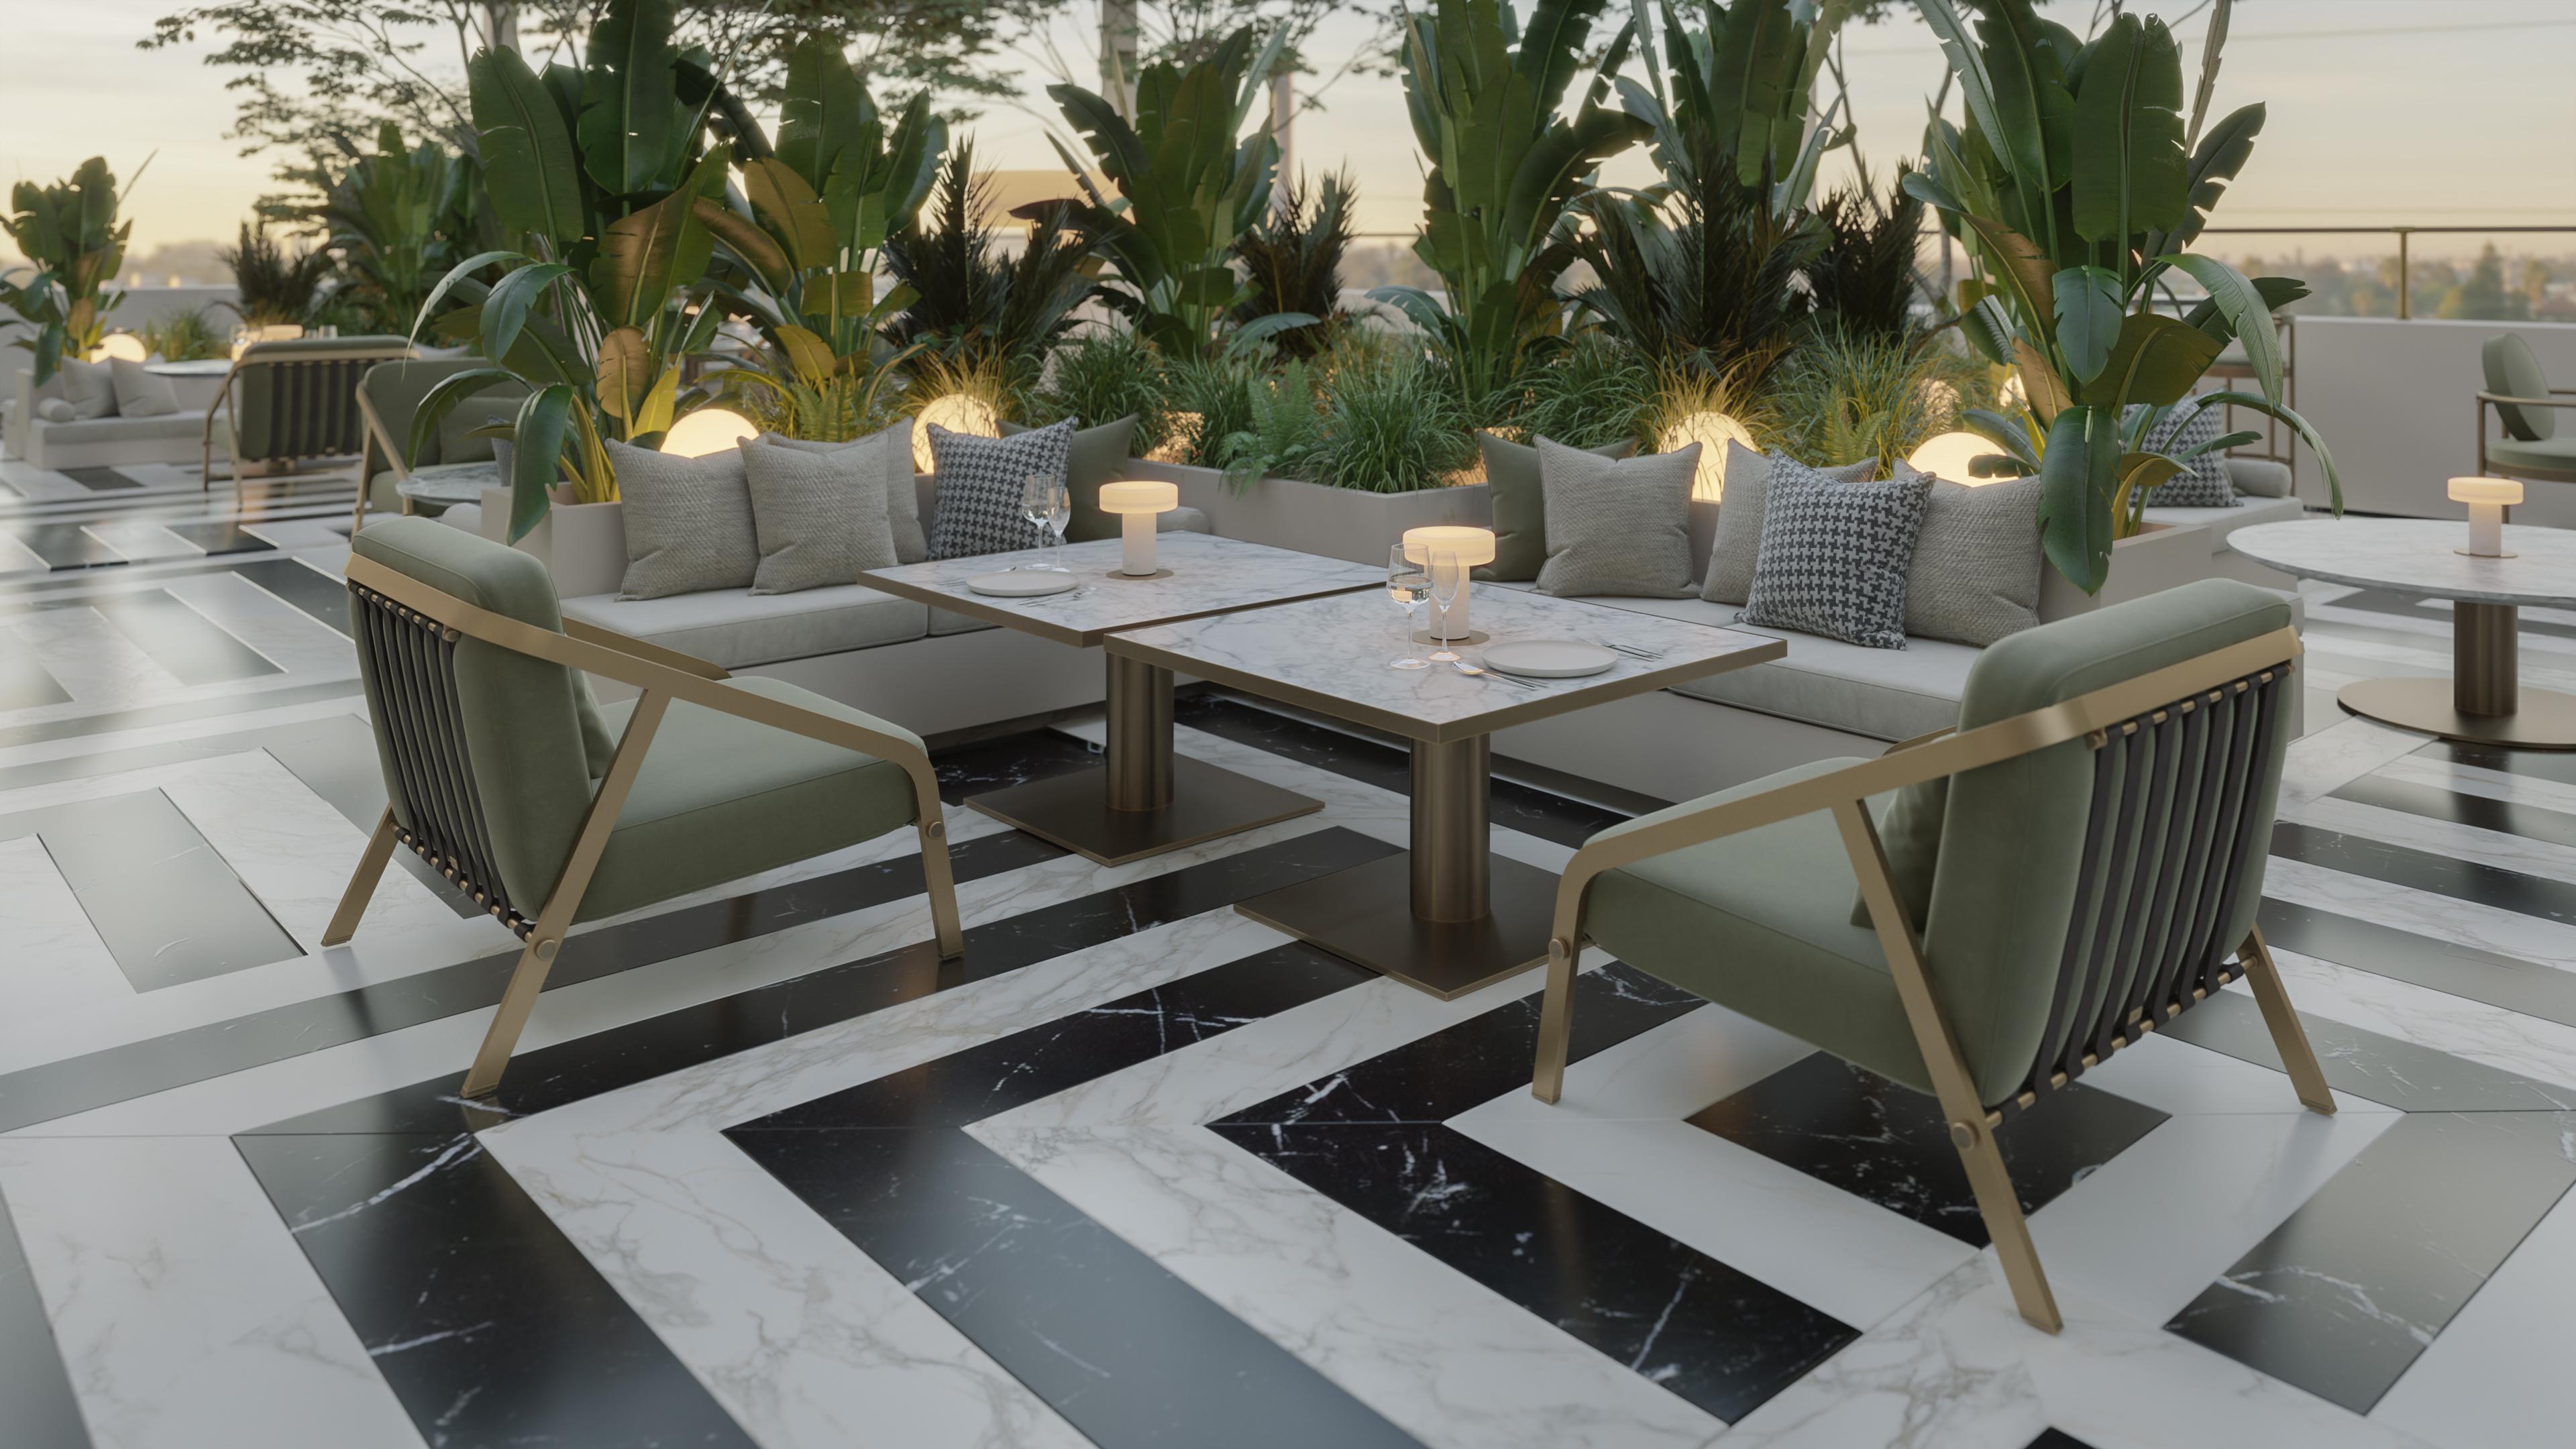 La table de salle à manger rectangulaire Dawn s'avère être une option attrayante car elle présente un design Modern/One, parfait pour ajouter une touche d'élégance contemporaine à votre décor.

Sa composition fait appel à des matériaux de haute